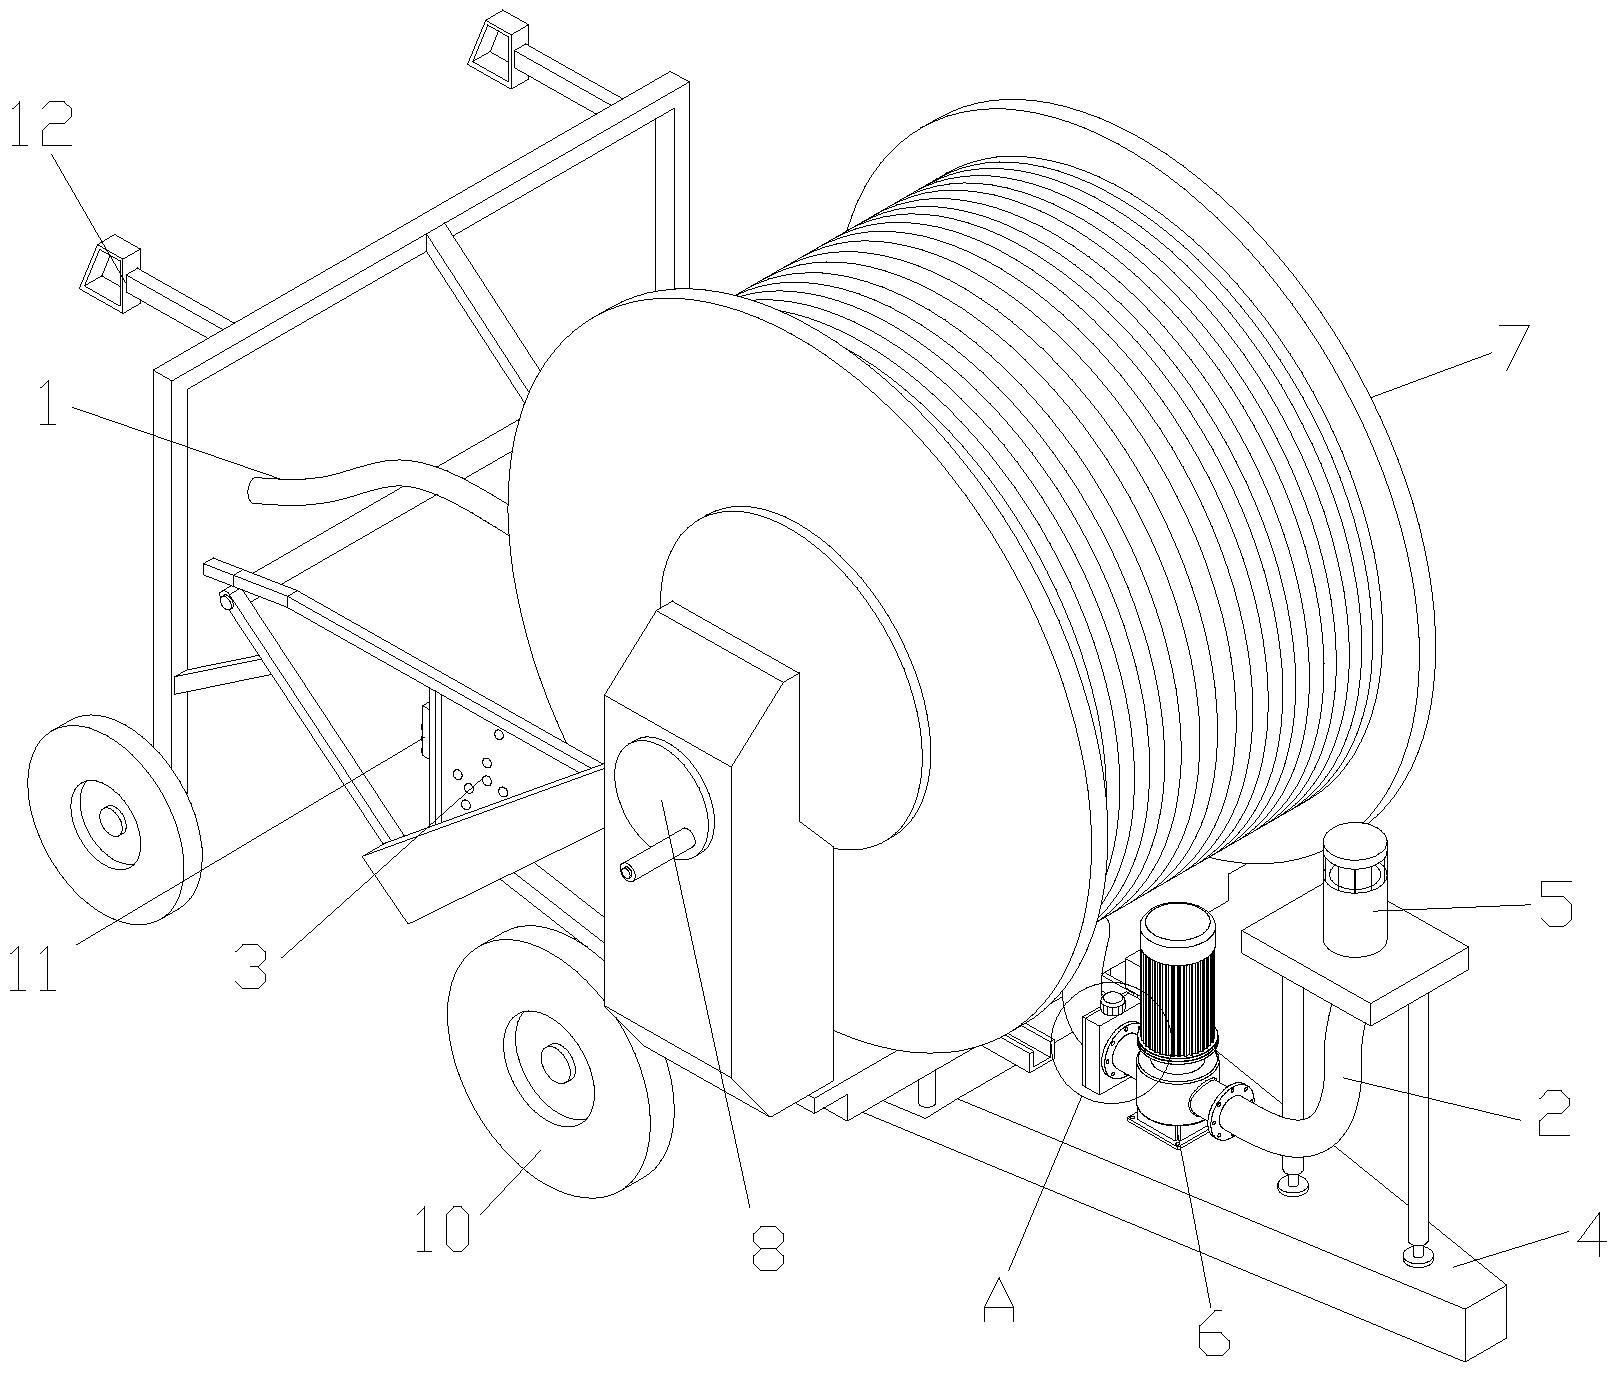 一种实用型农业喷灌机专利图